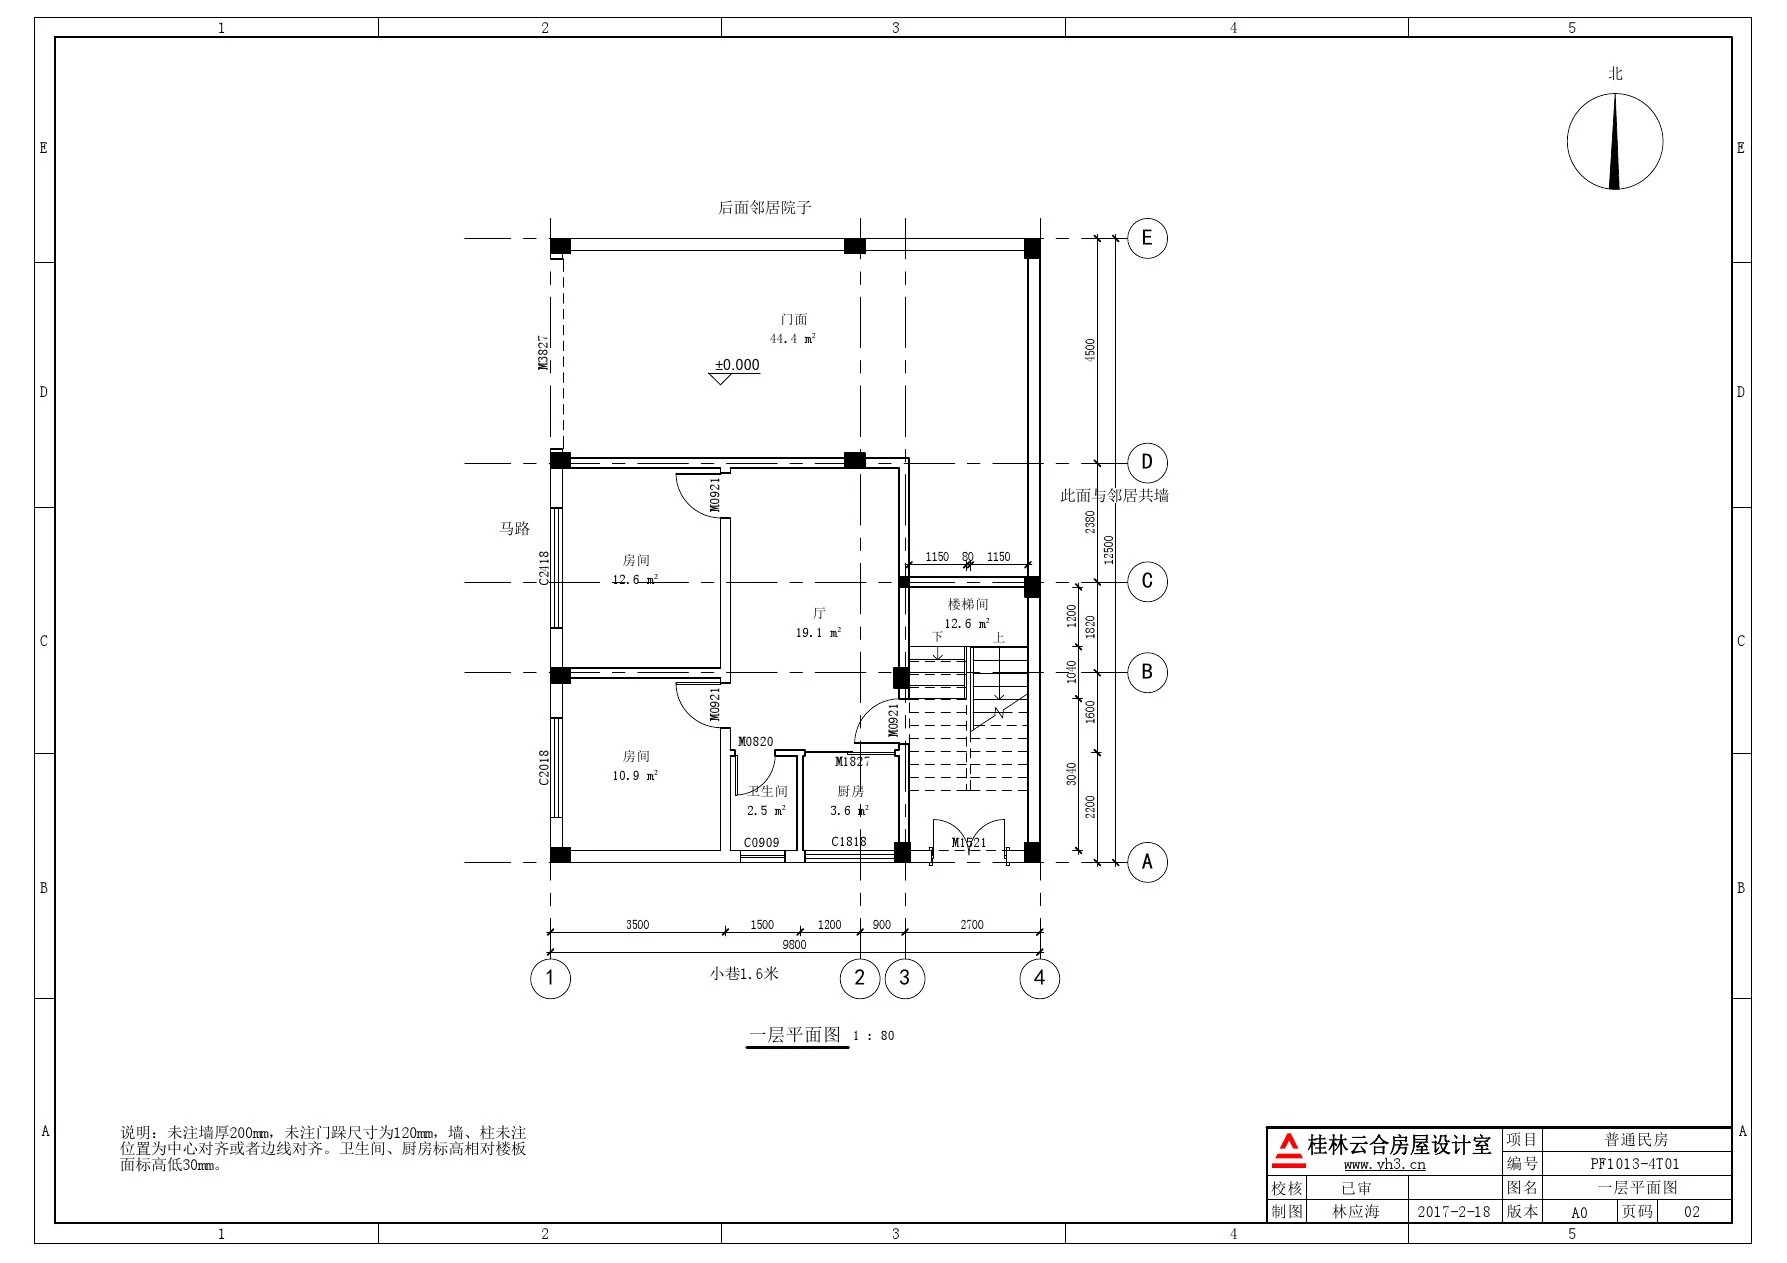 9.8x12.5 三层半自建楼房建筑平面图户型图农村住宅户型布置图方案图